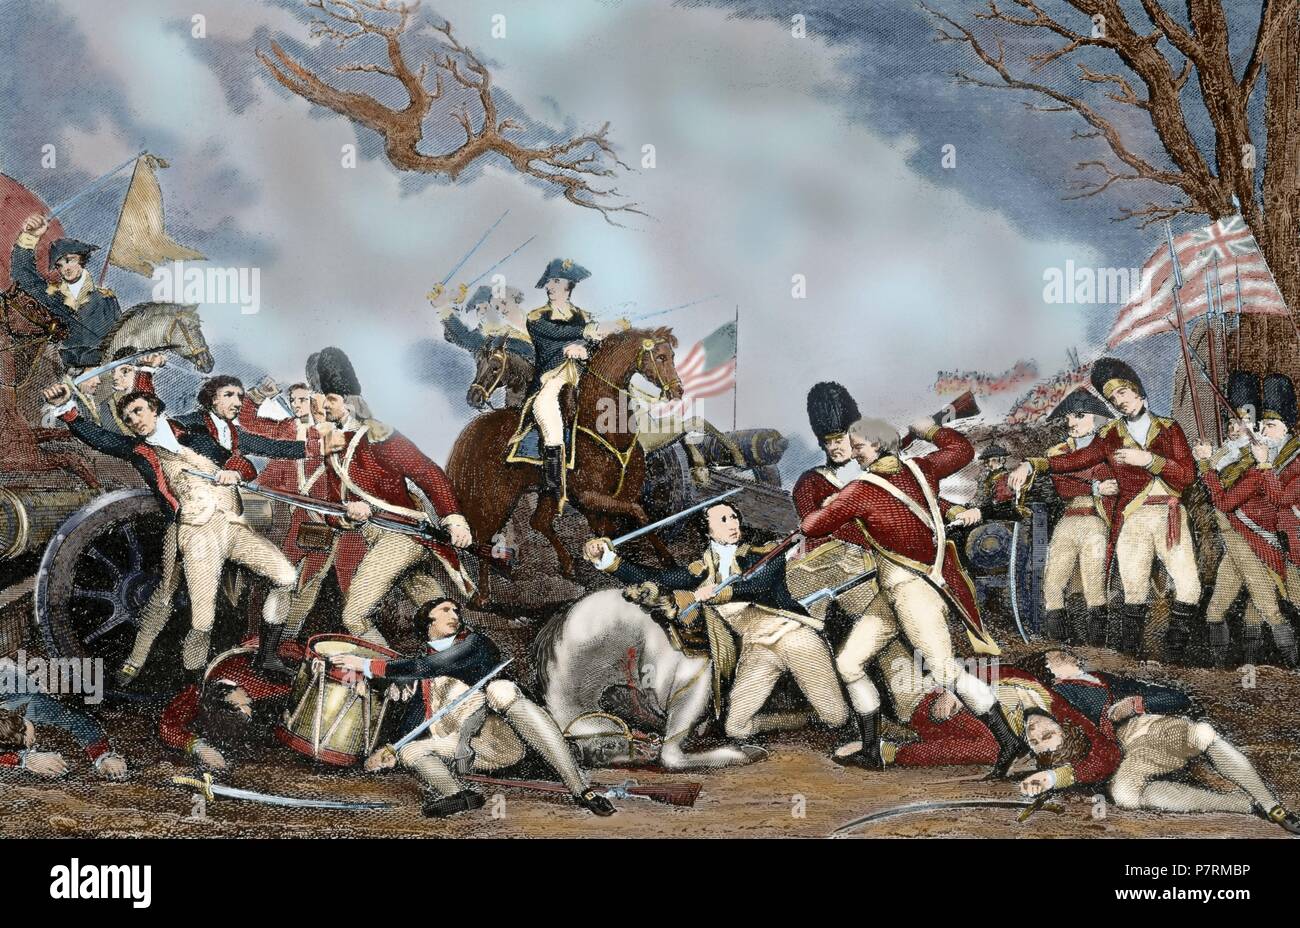 Amerikanischer Unabhängigkeitskrieg (1775-1783). Die Schlacht von Princeton (3. Januar 1777). Der General George Washington revolutionären Kräfte besiegten britische Truppen in der Nähe von Princeton, New Jersey. Gravur. des 19. Jahrhunderts. Farbige. Stockfoto